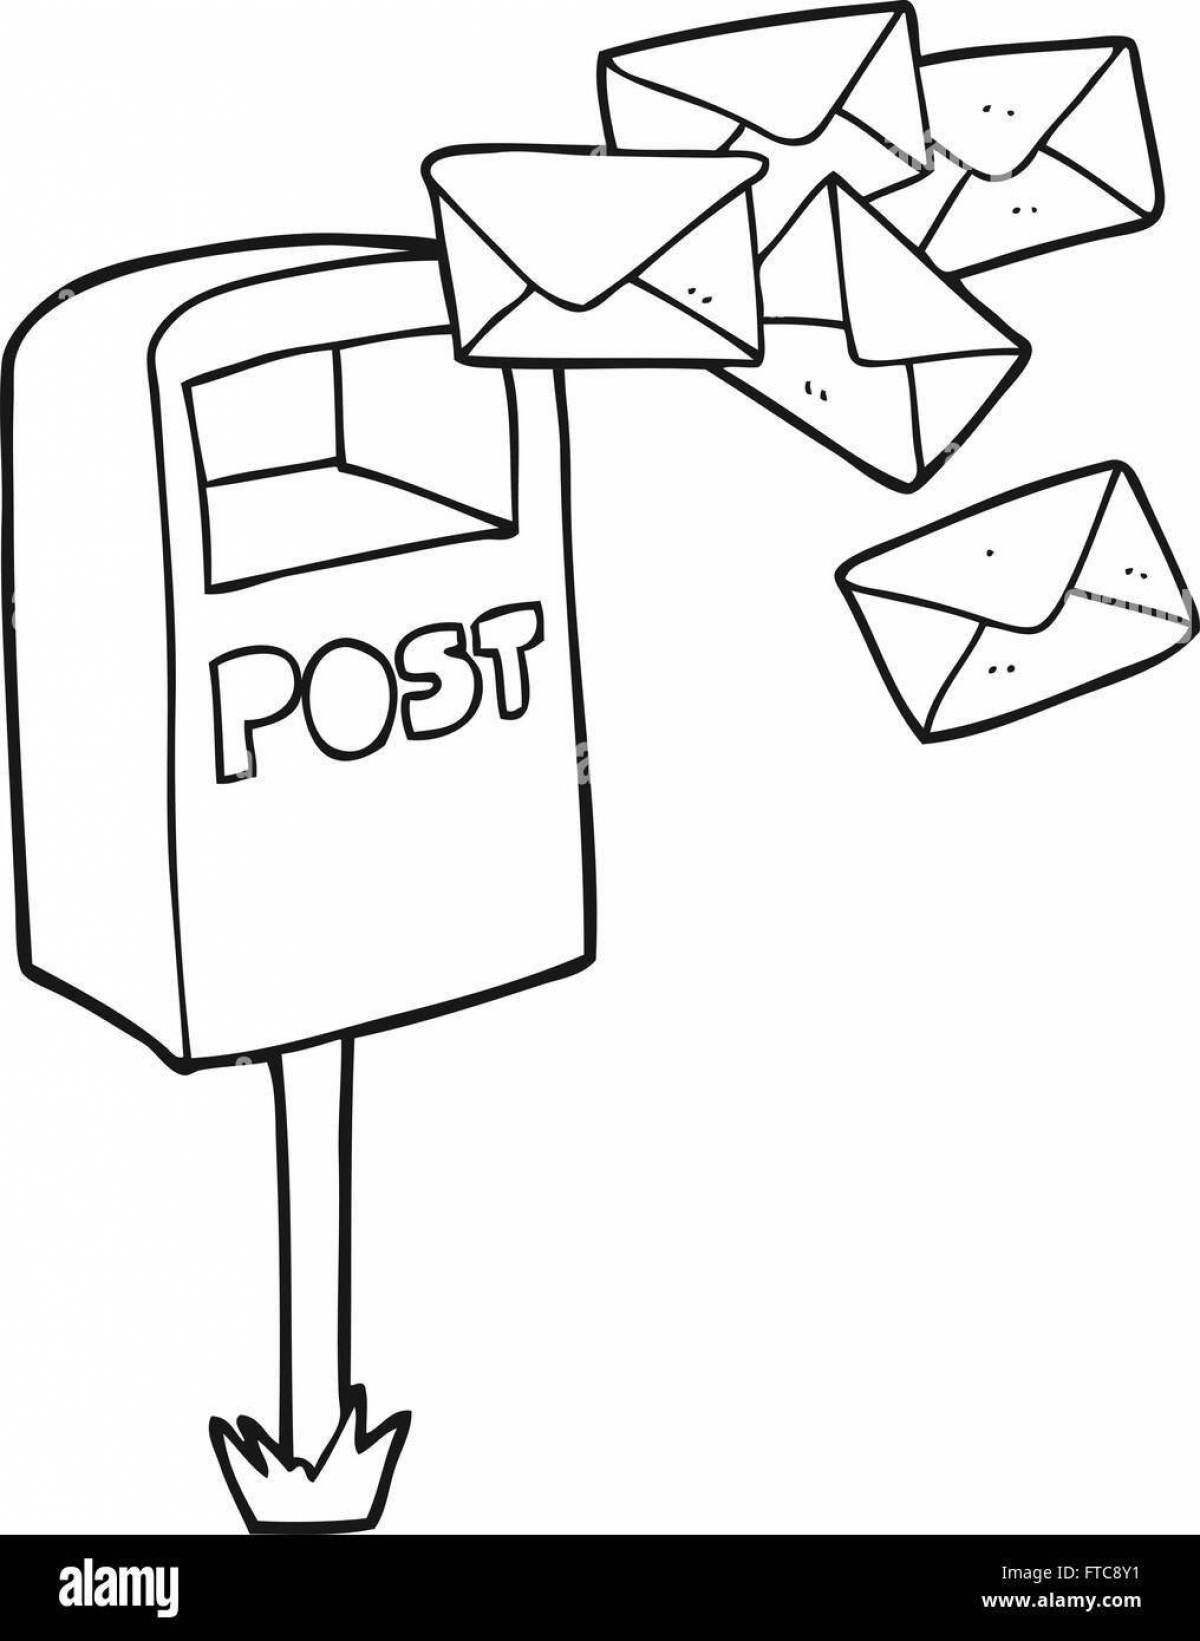 Раскраска почты с цветными брызгами